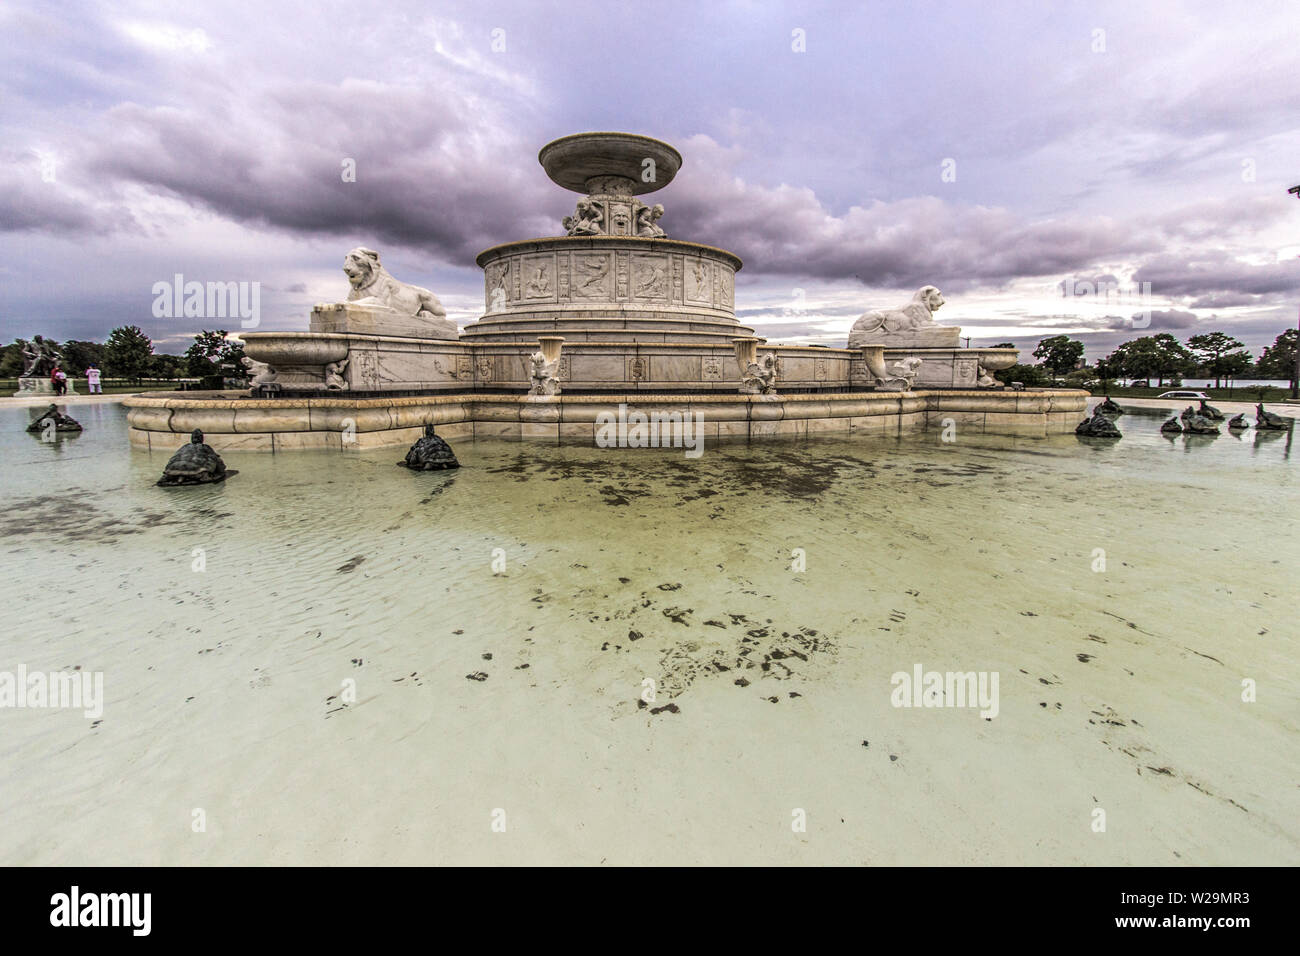 Detroit, Michigan, USA - 6 septembre 2018 : James Scott Memorial Fontaine sur l'île Belle. La fontaine a été achevée en 1925, au coût de 500 000 $ Banque D'Images